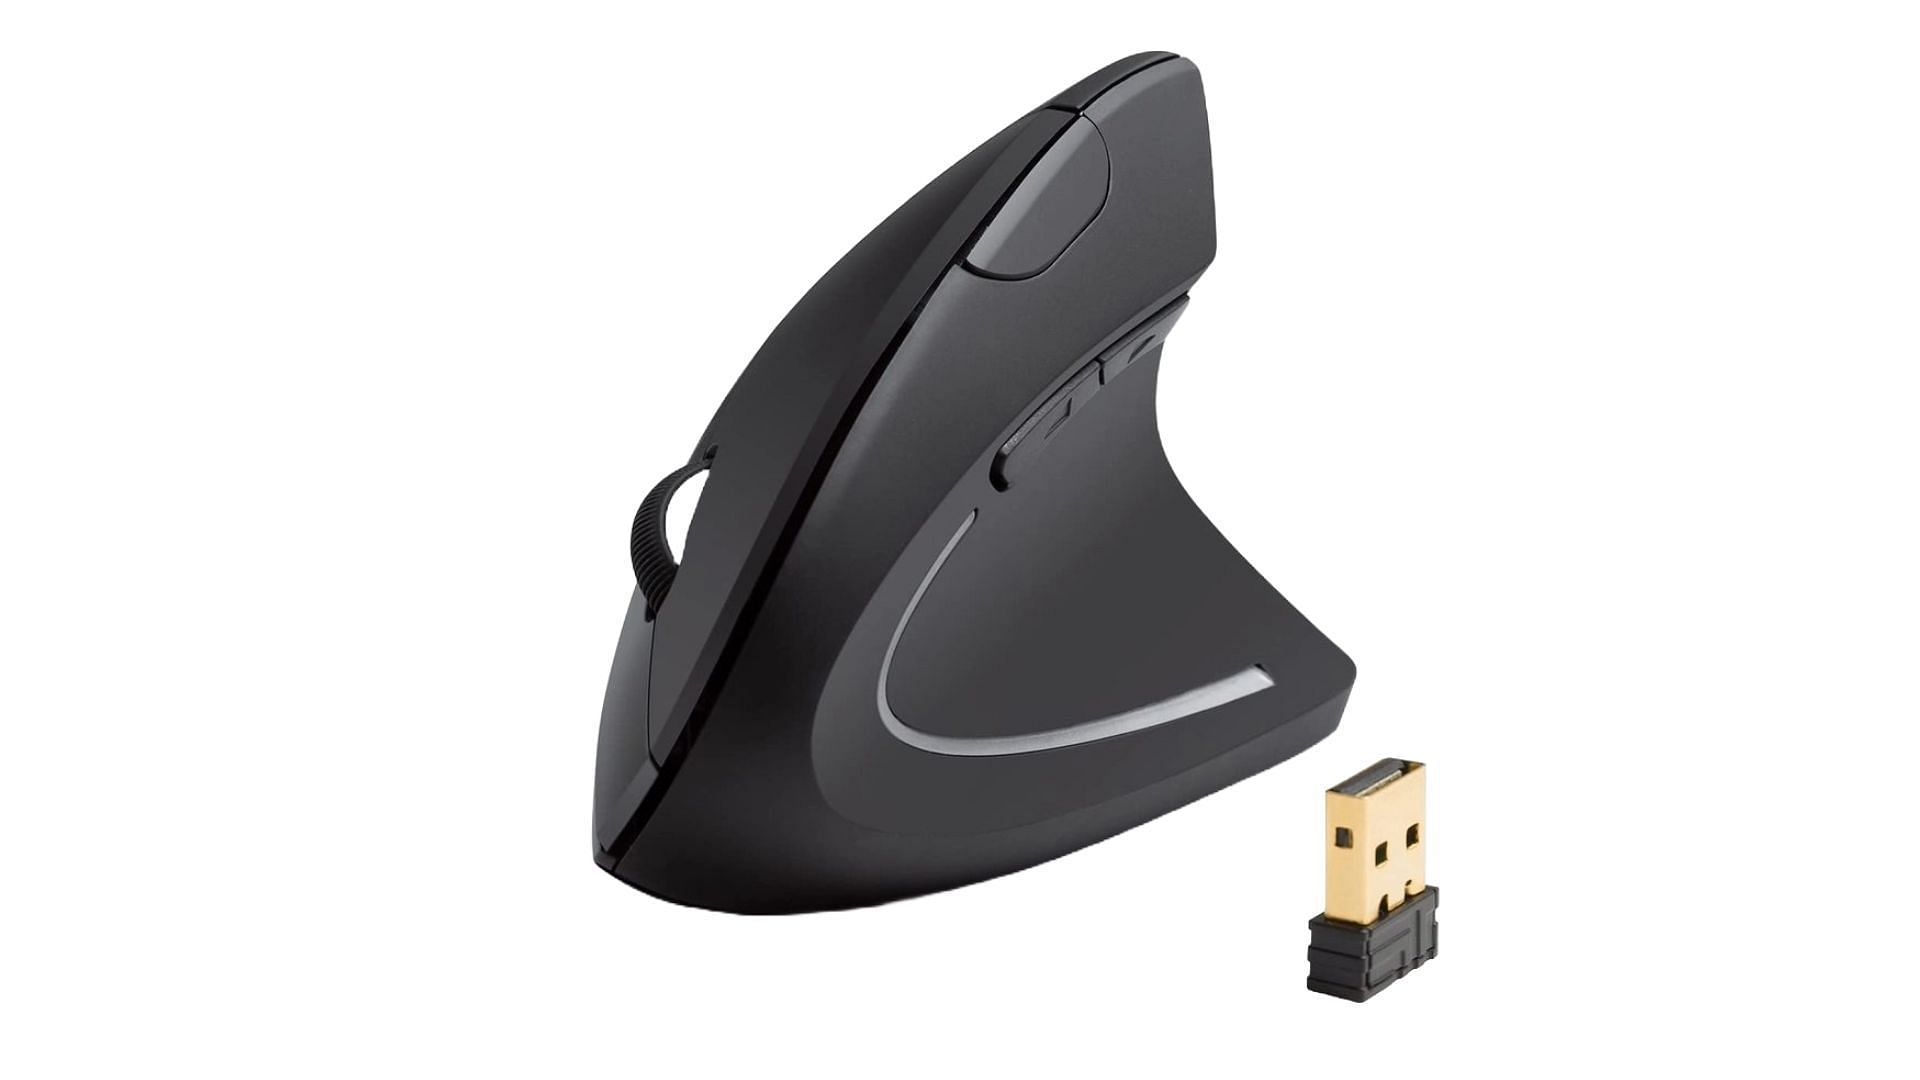 Anker 2.4G Wireless - best ergonomic mice (Image via Anker)